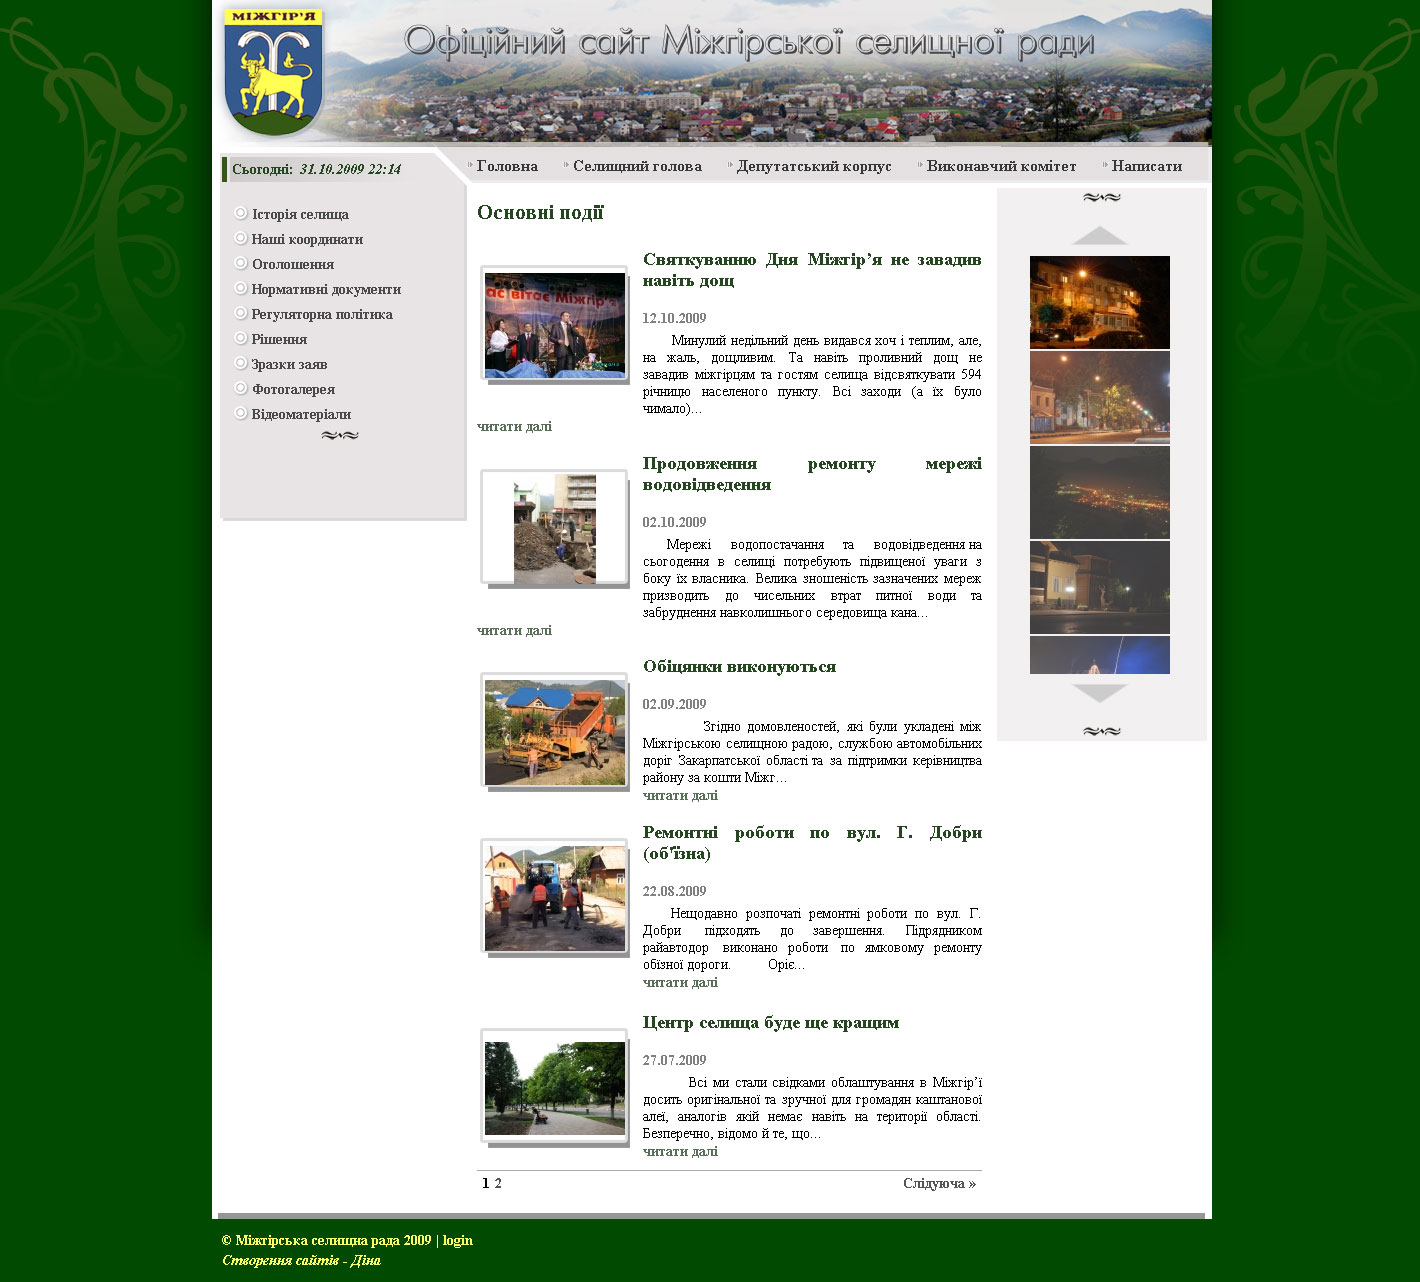 Официальный сайт, созданный для Межгорского сельского совета в Закарпа